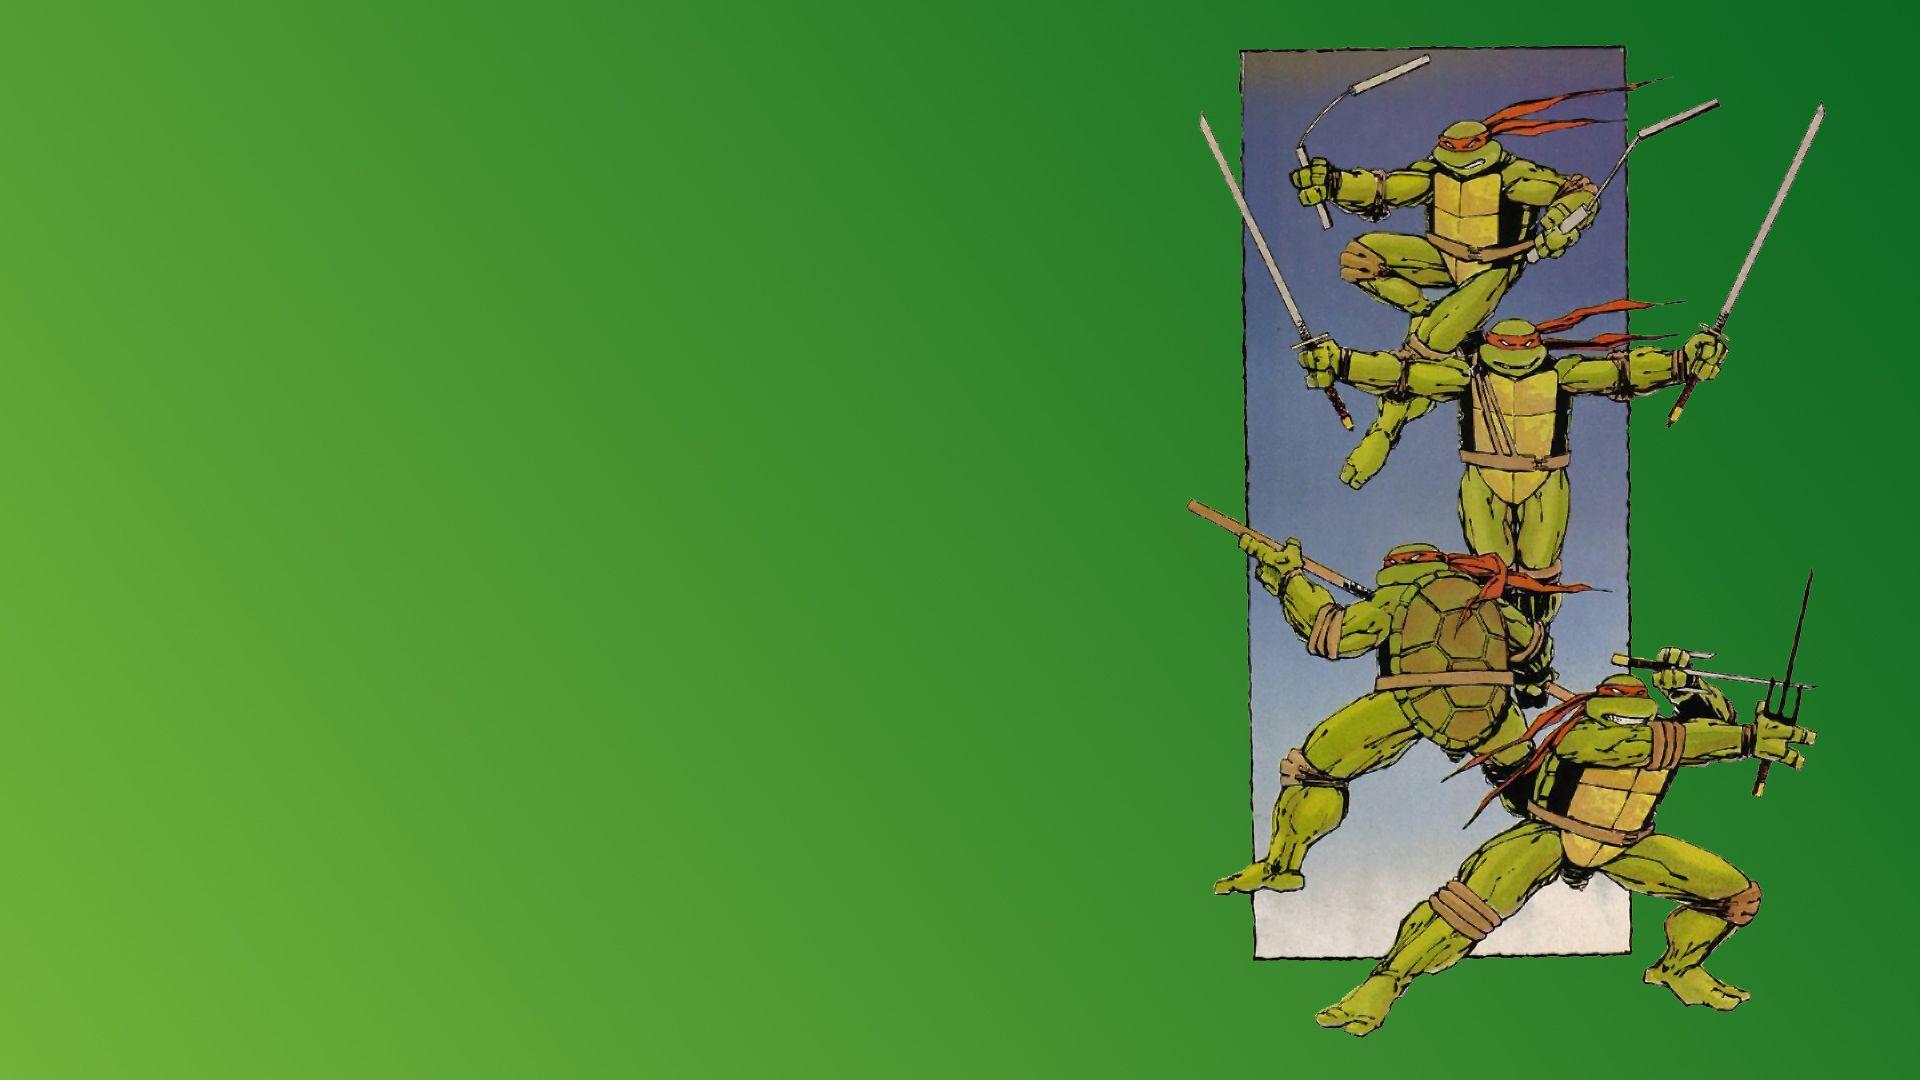 Teenage Mutant Ninja Turtles wallpaperx1080